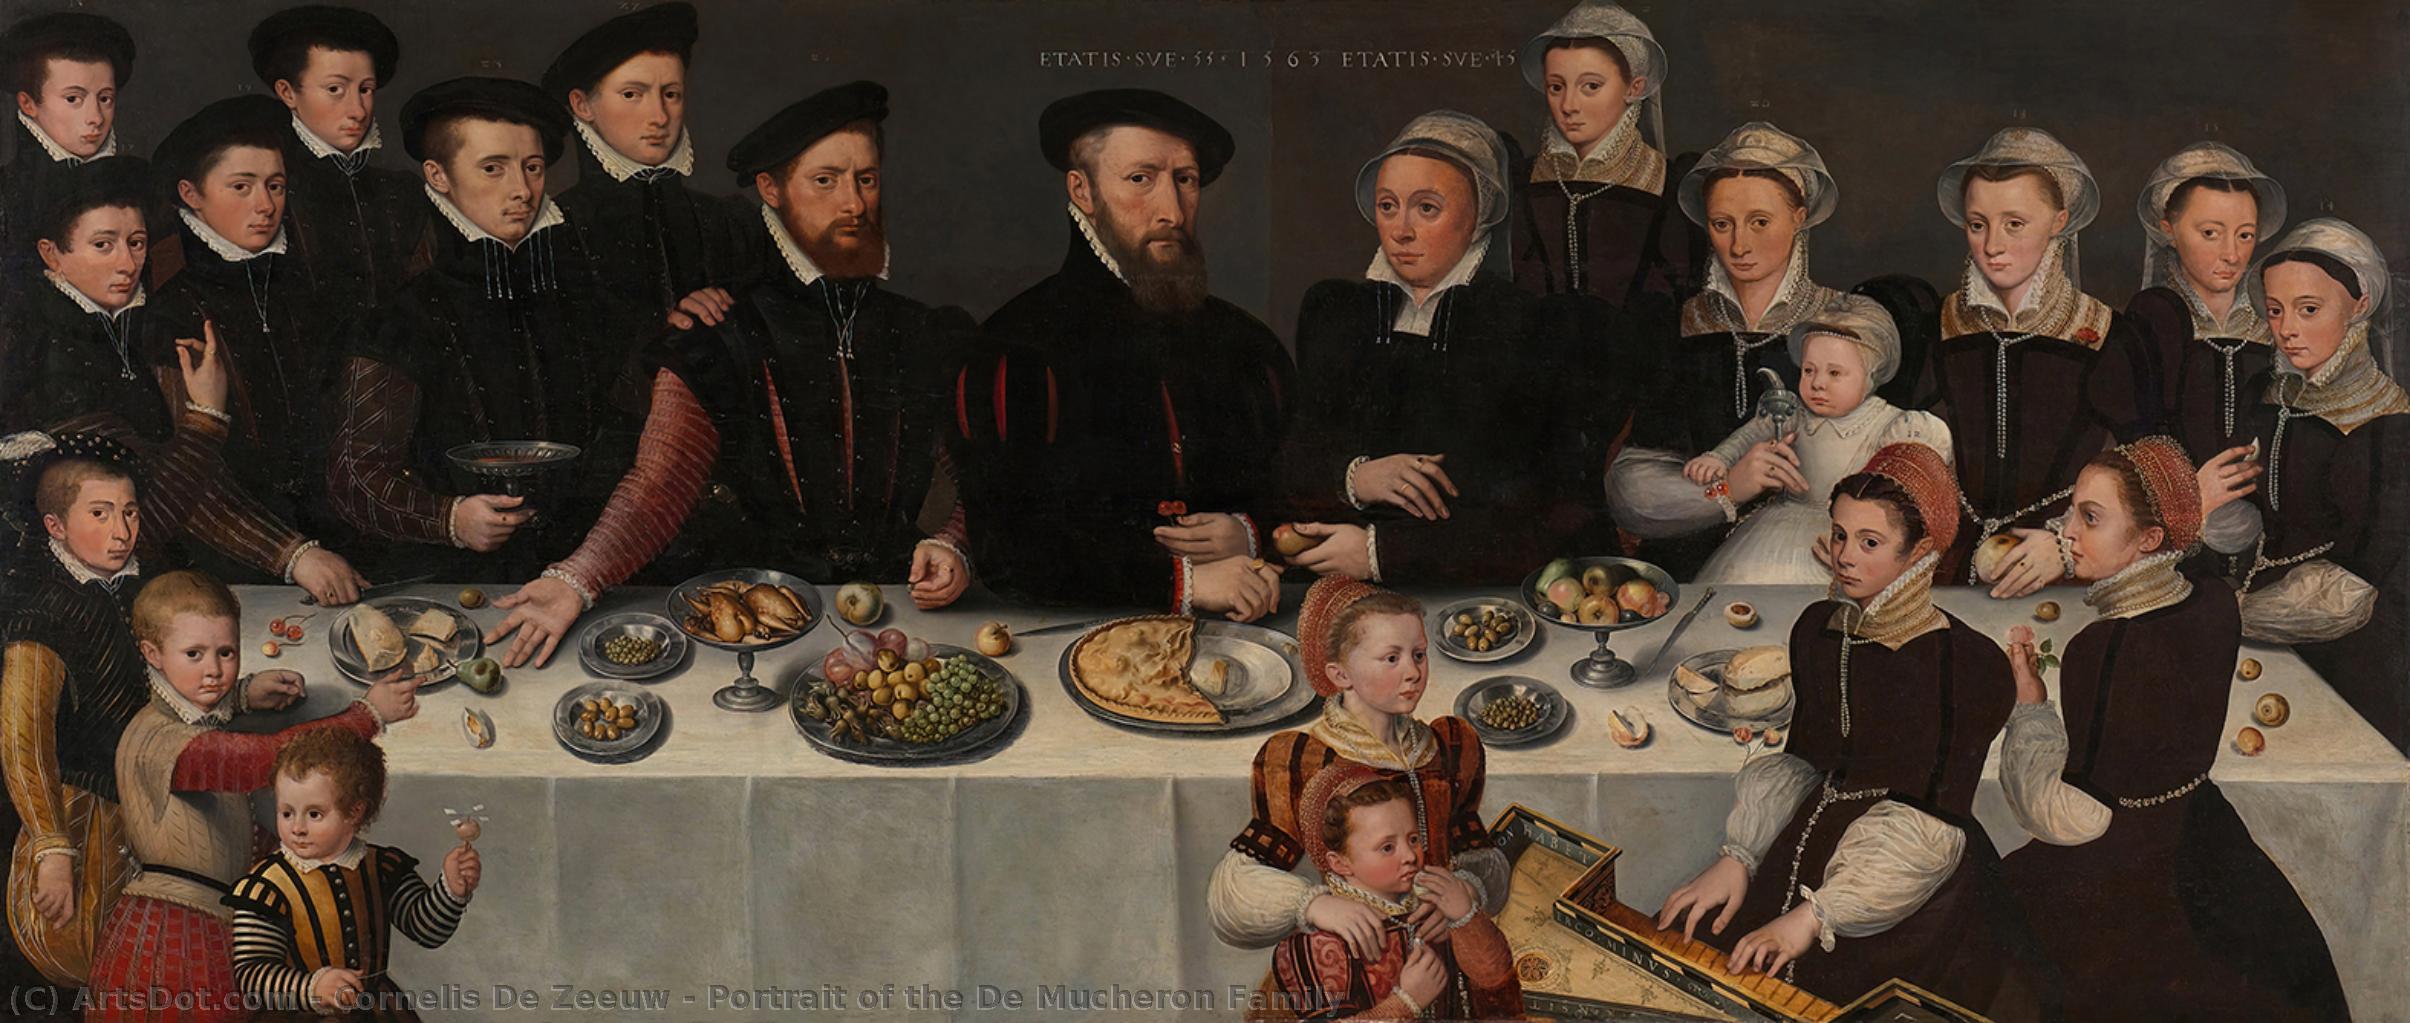 Wikioo.org - Die Enzyklopädie bildender Kunst - Malerei, Kunstwerk von Cornelis De Zeeuw - Porträt des Von Mucheron Familie